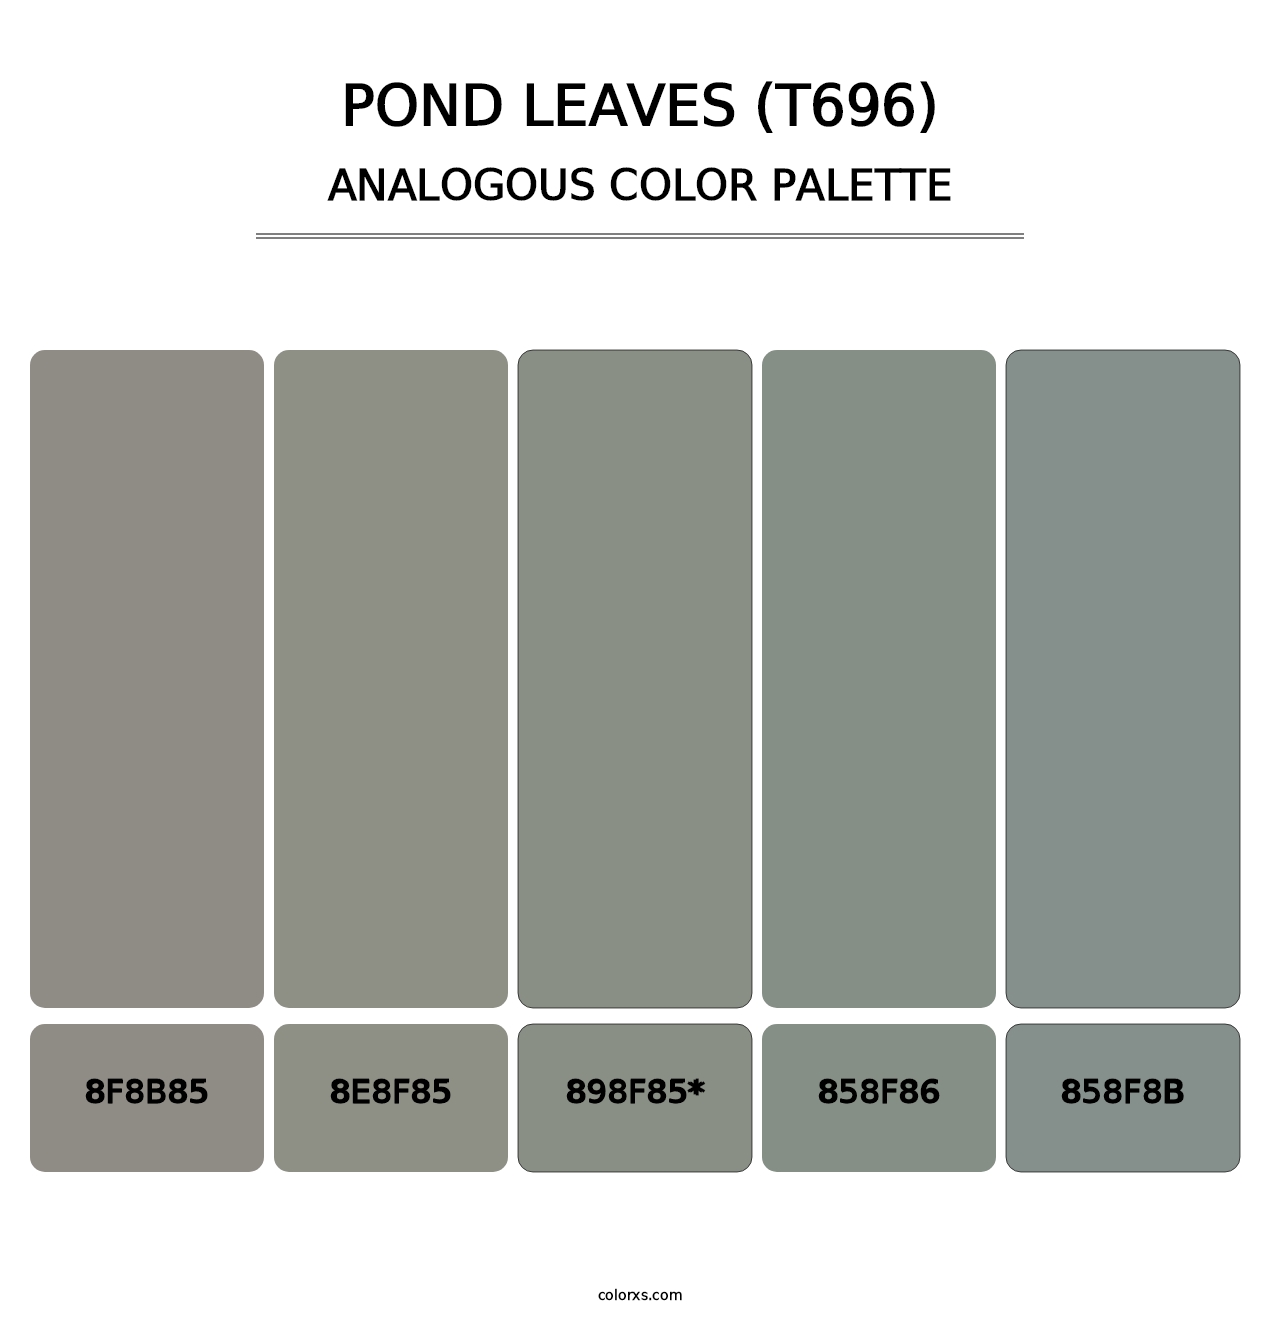 Pond Leaves (T696) - Analogous Color Palette